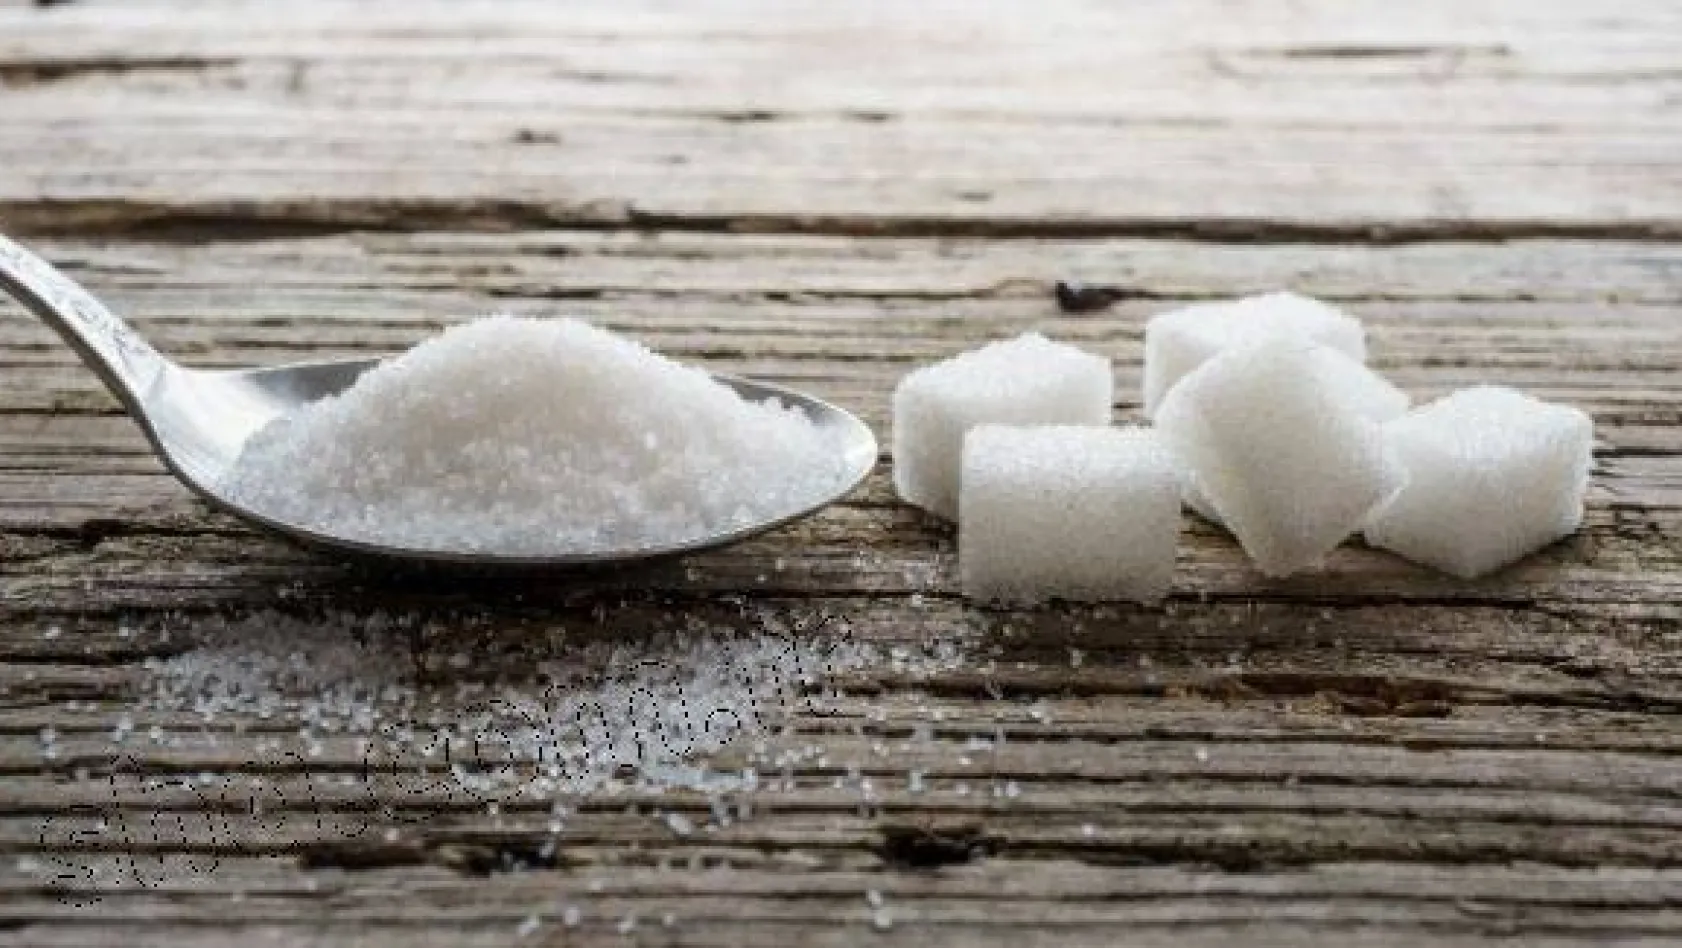 Şeker neden zararlı? İşte cevabı